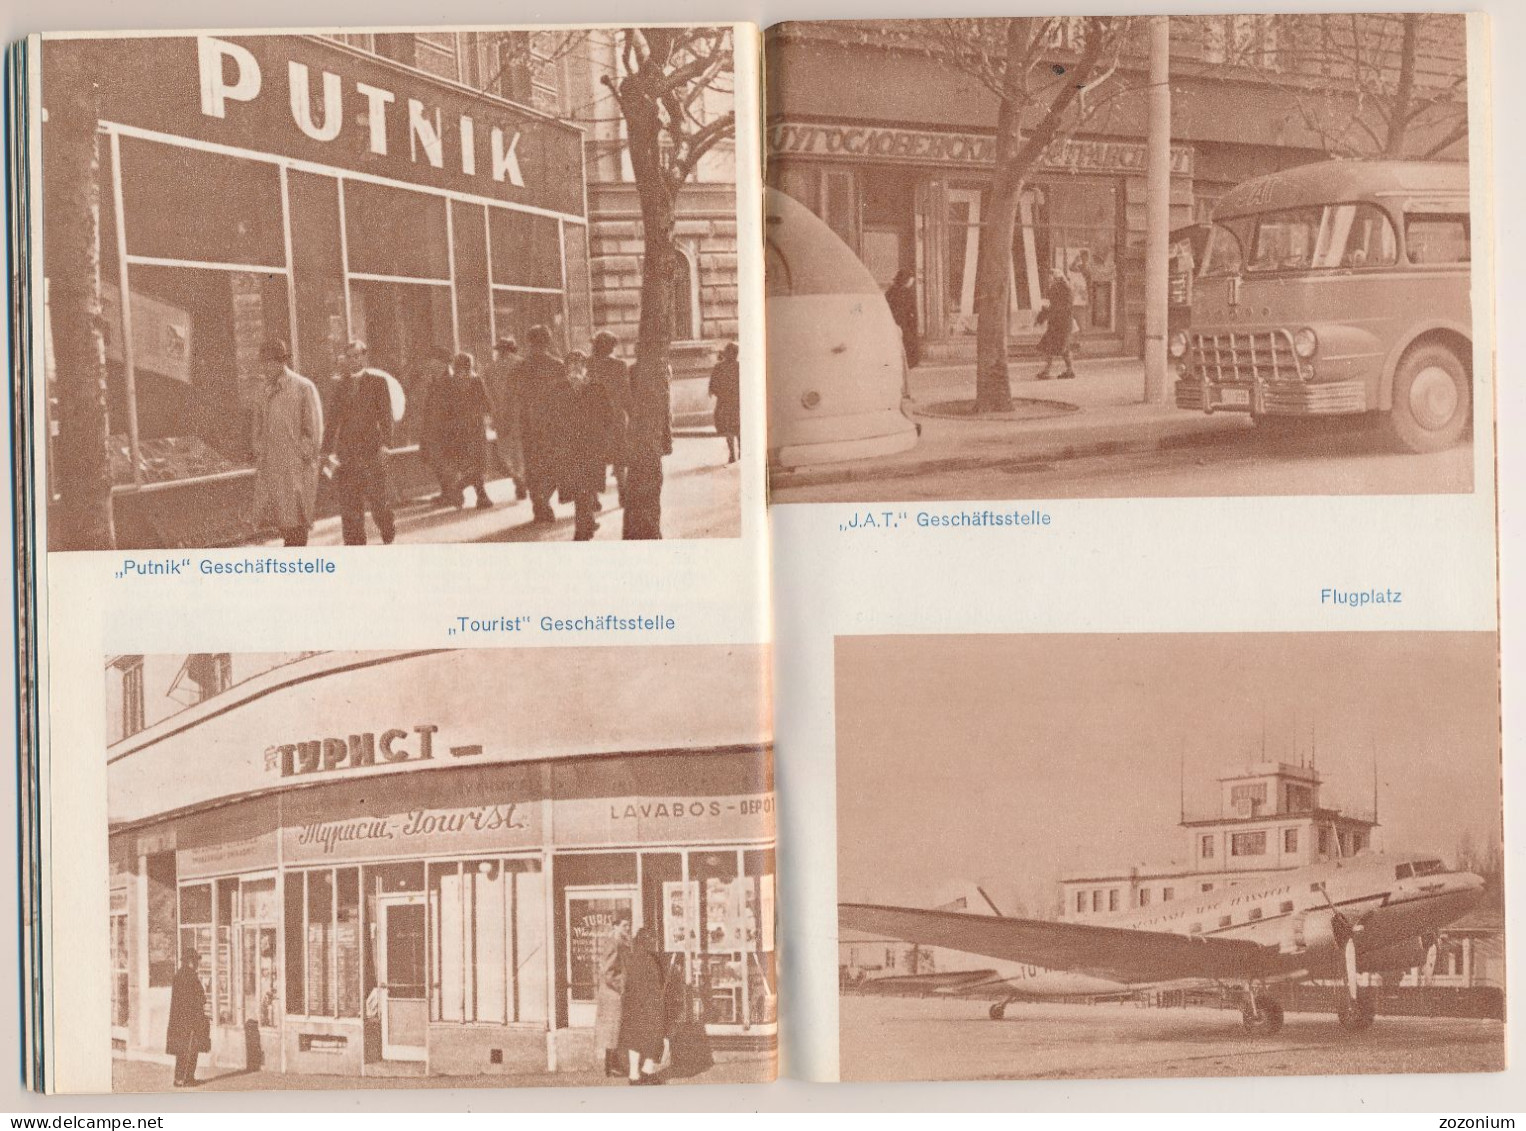 1950s Beograd, Serbia, Yugoslavia Vintage Turistic Brochure Old Prospect - Dépliants Touristiques